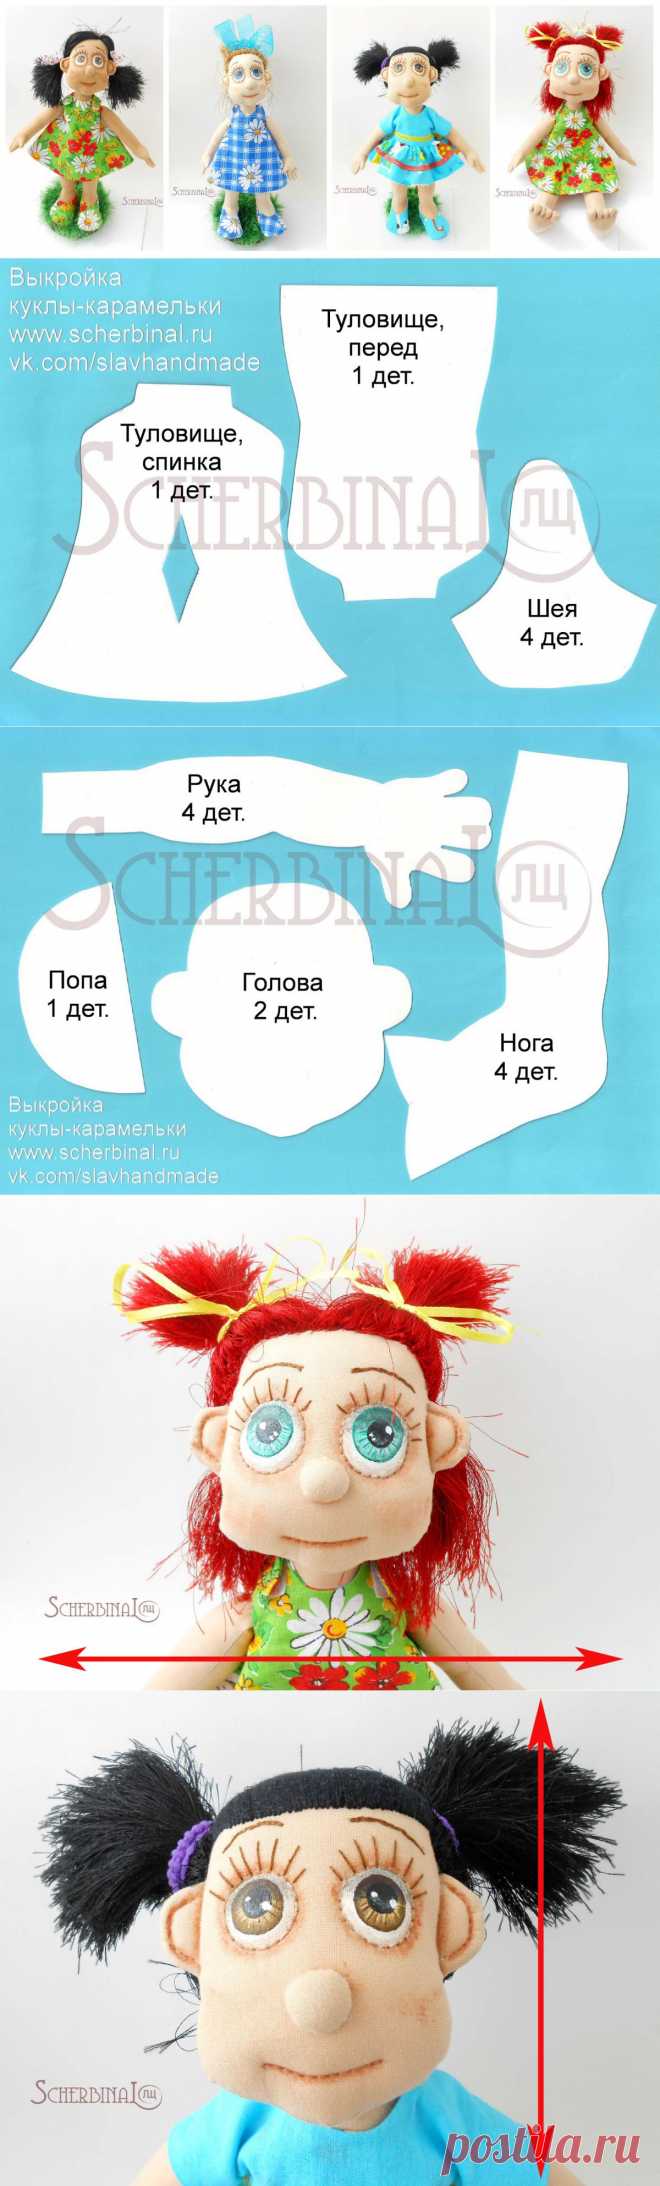 СП с Людмилой Щербина. Шьём куклу-карамельку. Тело куклы, часть 1. 
http://www.liveinternet.ru/users/likata/post332154172/ - часть2
http://www.liveinternet.ru/users/likata/post332154050/ - утяжки